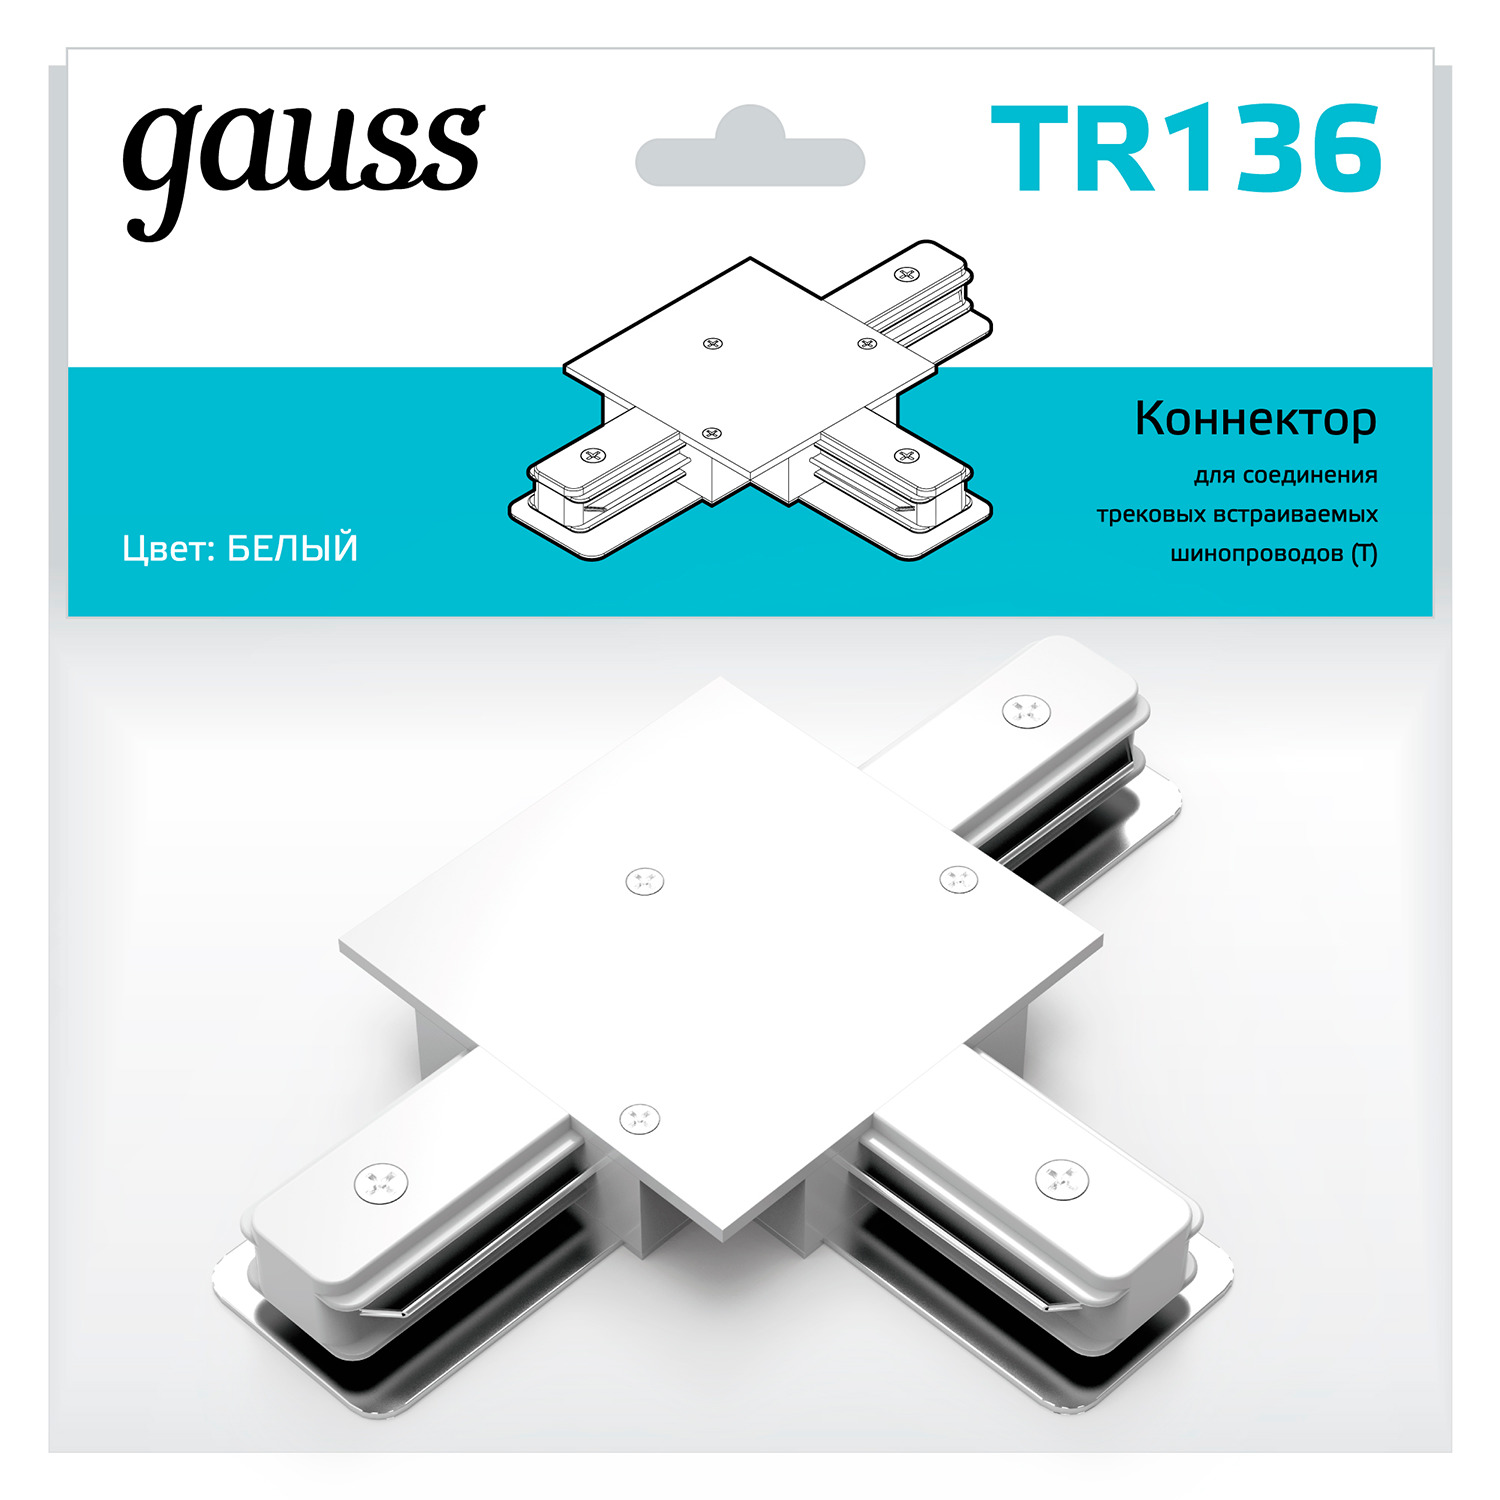 Коннектор Gauss для встраиваемых трековых шинопроводов (T) белый коннектор gauss для встраиваемых трековых шинопроводов